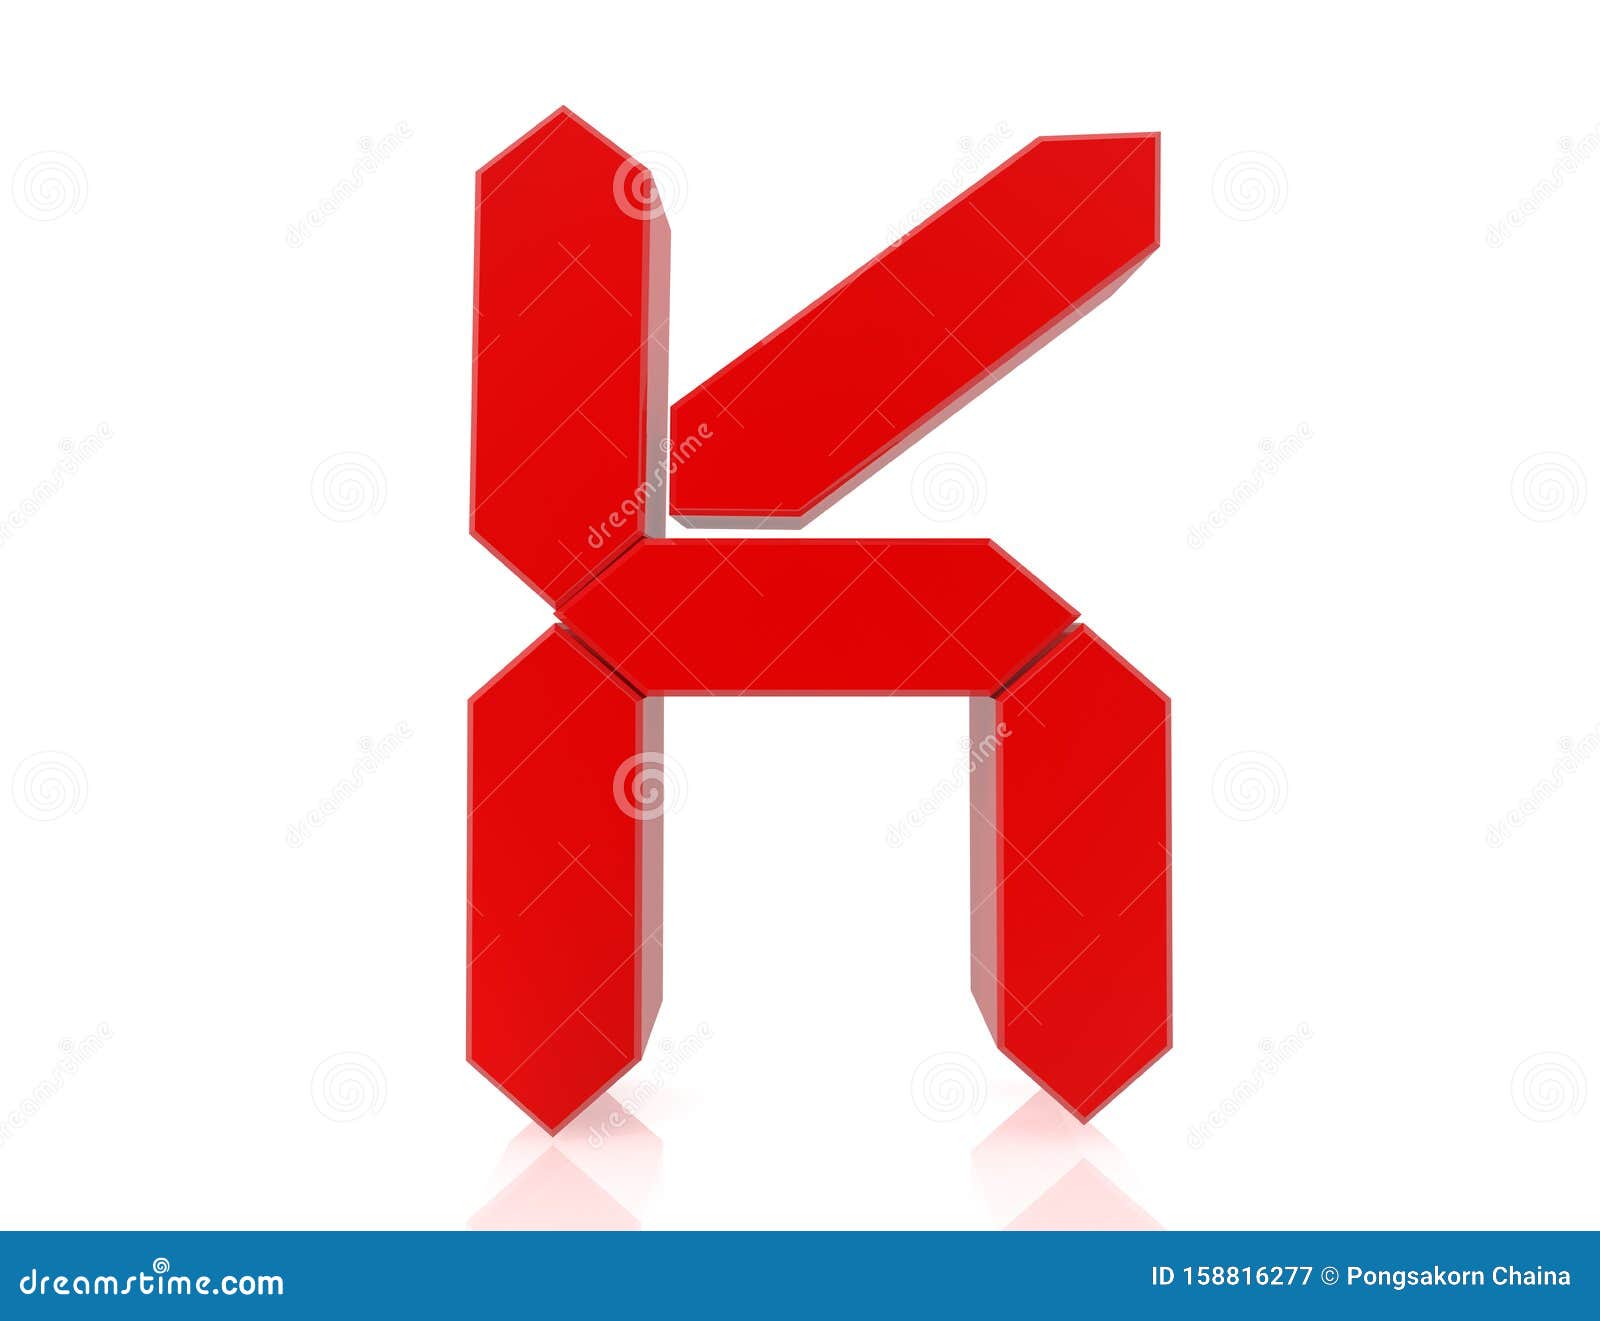 The Red Letter K Digital Style 3d Rendering Stock Illustration ...